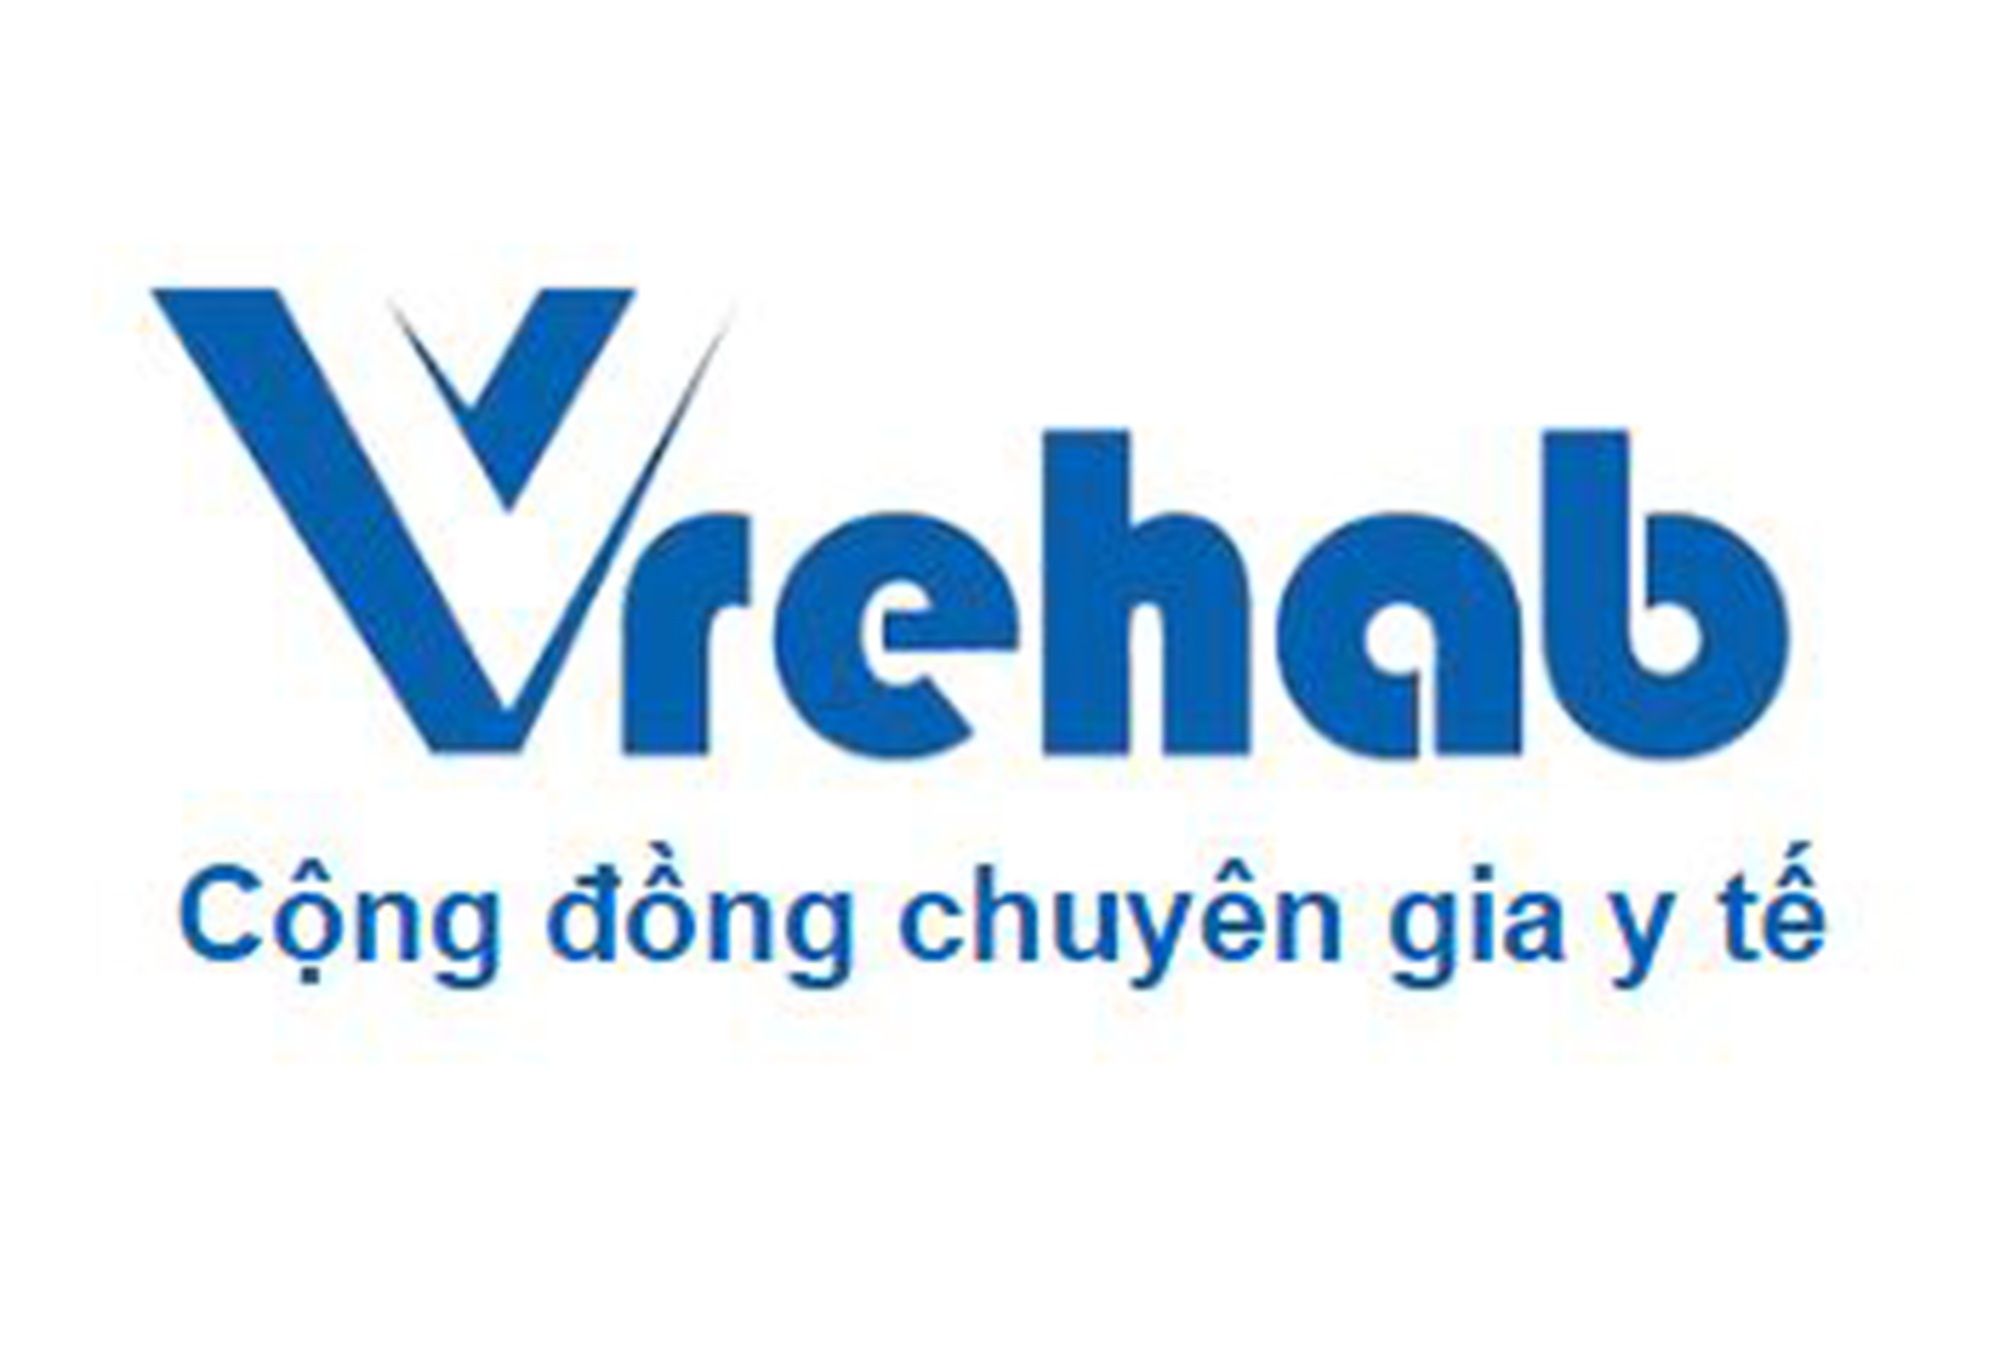 Giới thiệu, hướng dẫn cài đặt và đăng kí phần mềm Vrehab